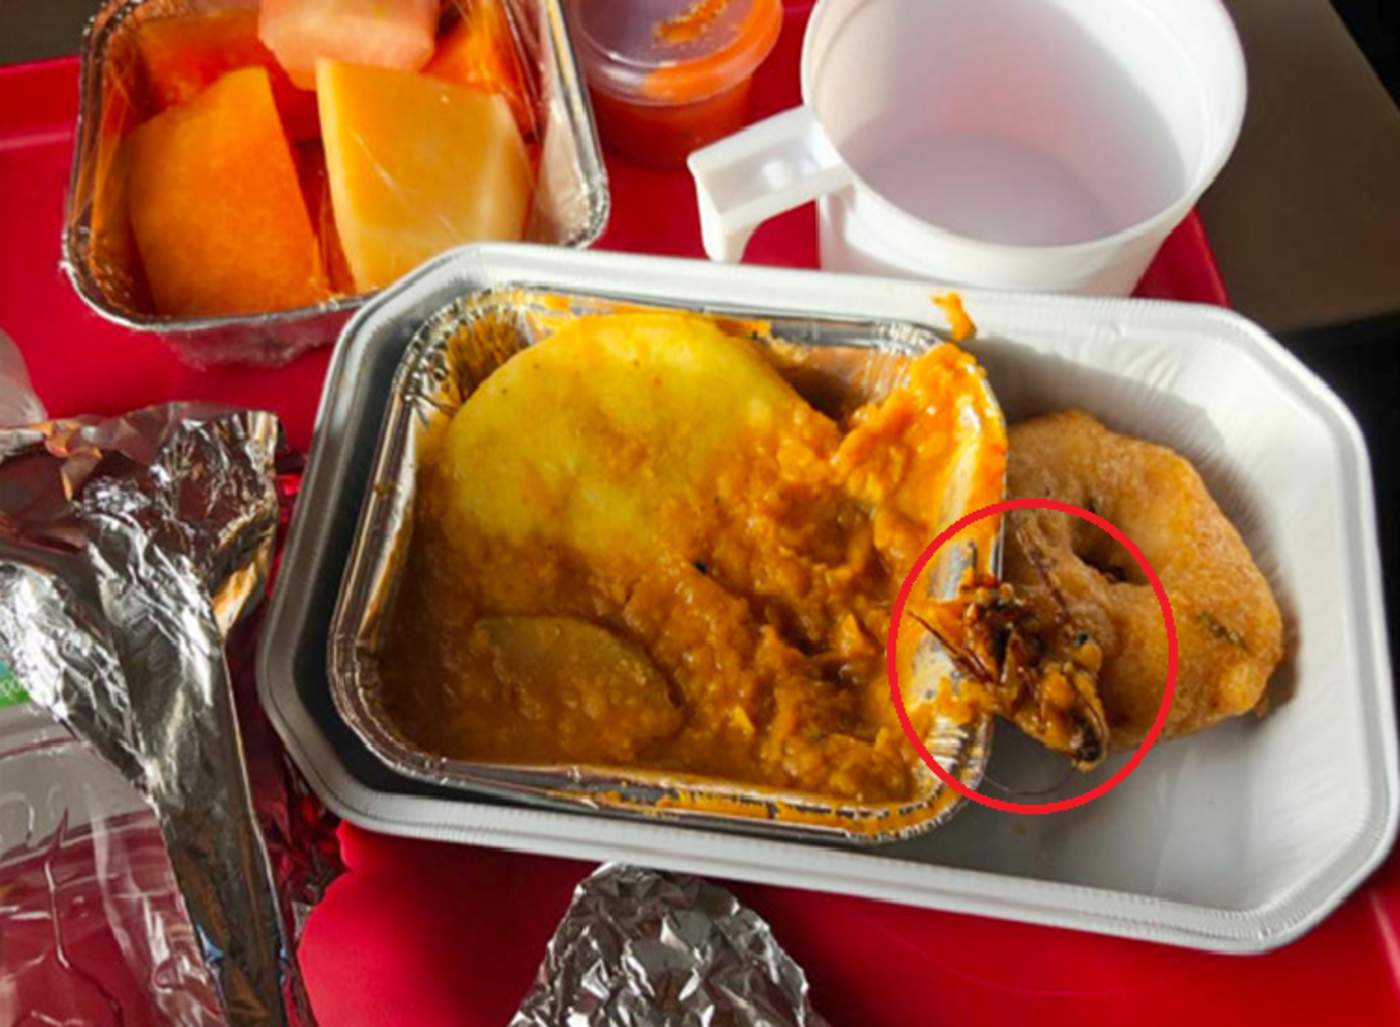 Hombre encontró una cucaracha en la comida del avión